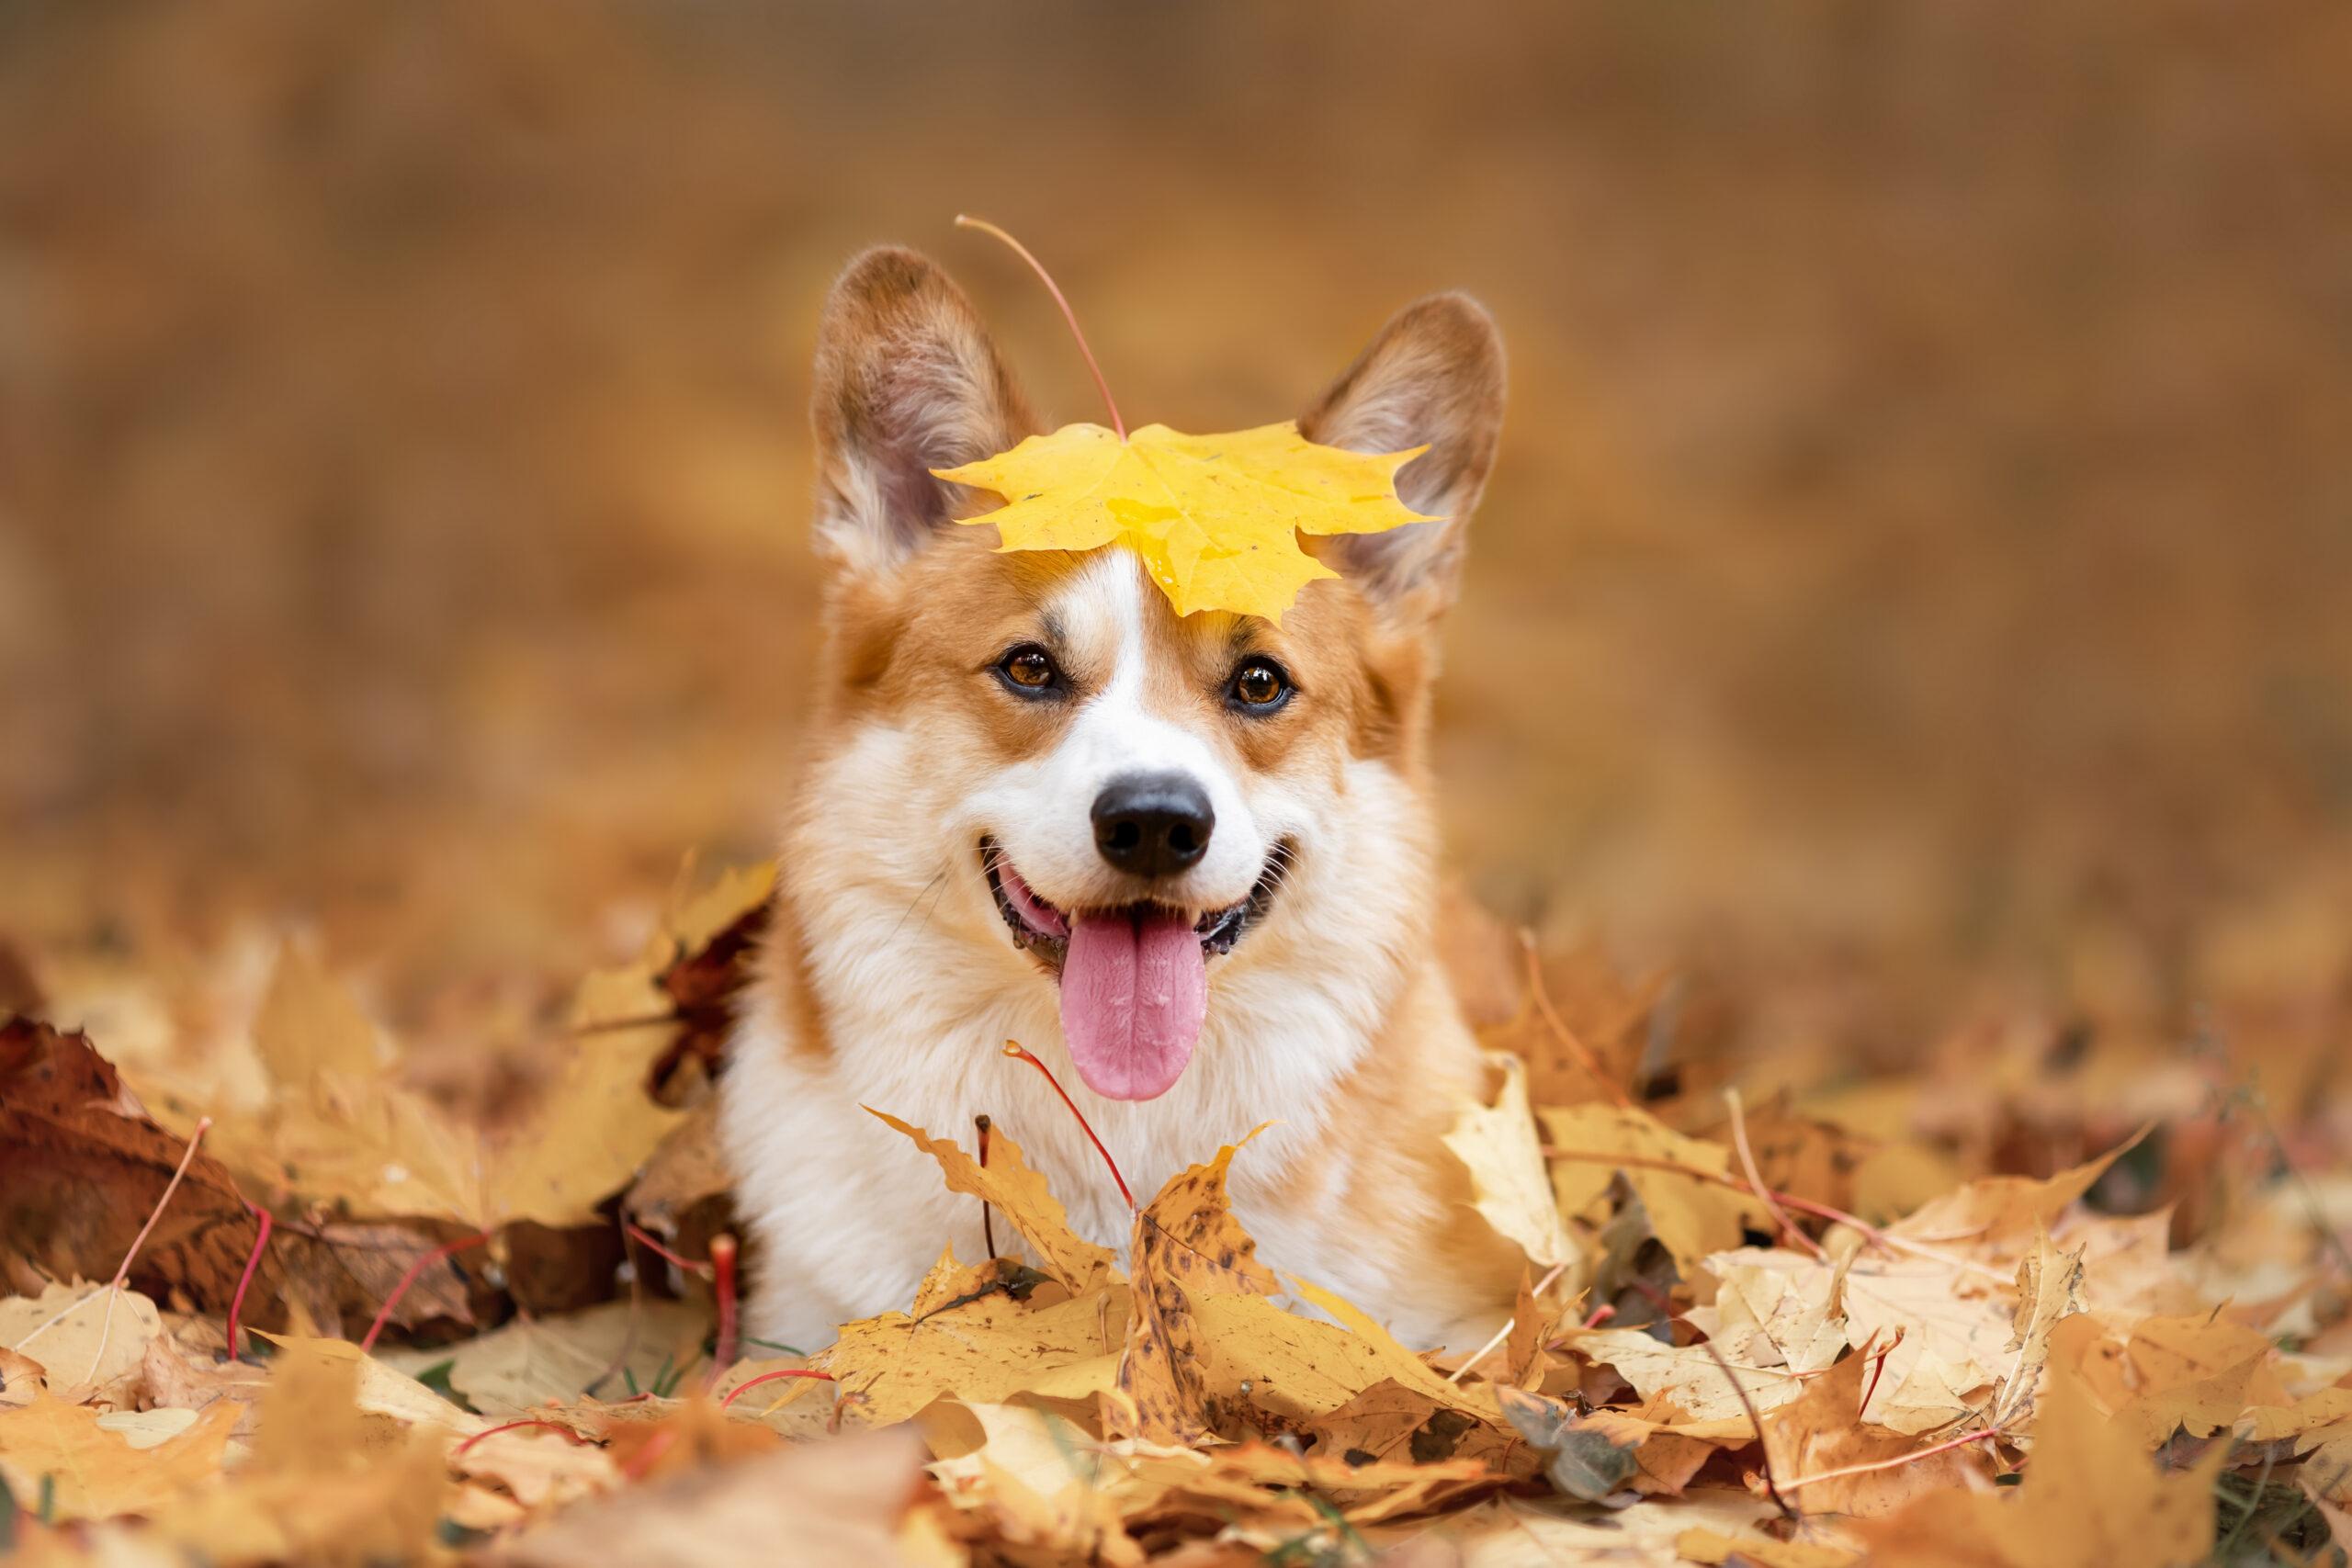 Herfstpret met huisdieren: tips voor een veilig en gezellig seizoen met jouw hond of kat